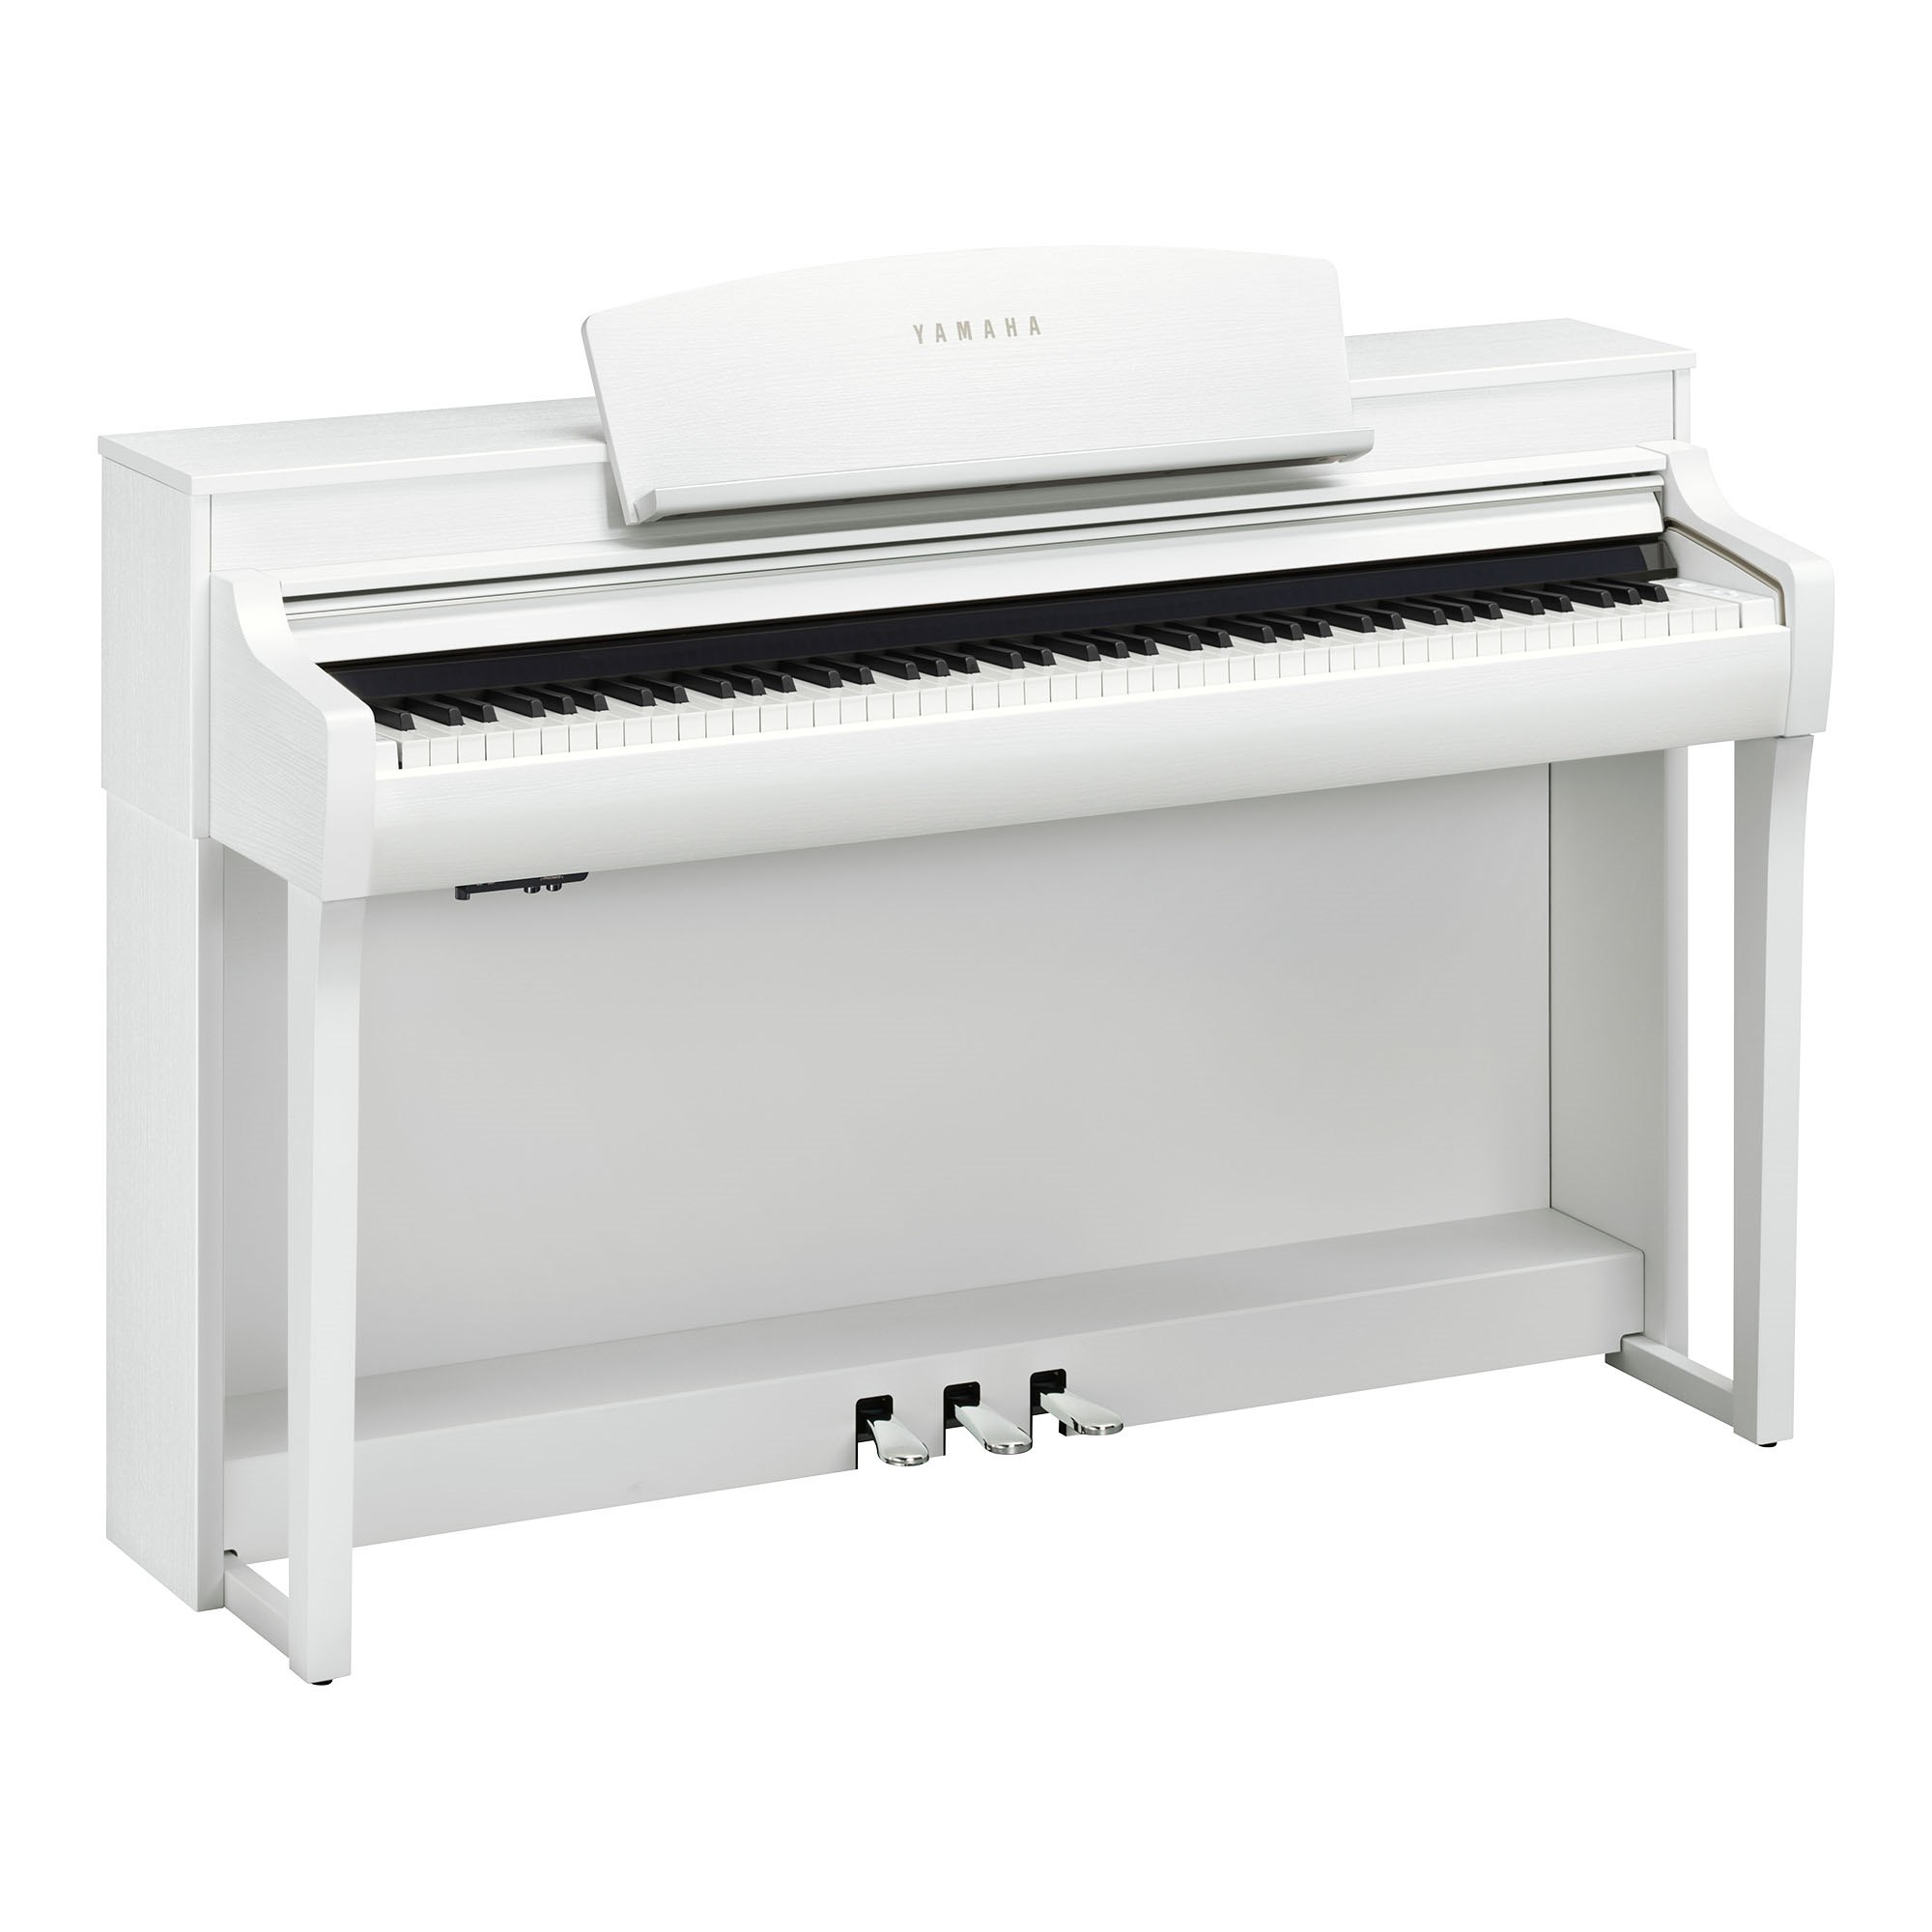 پیانو دیجیتال CSP-255 یاماها